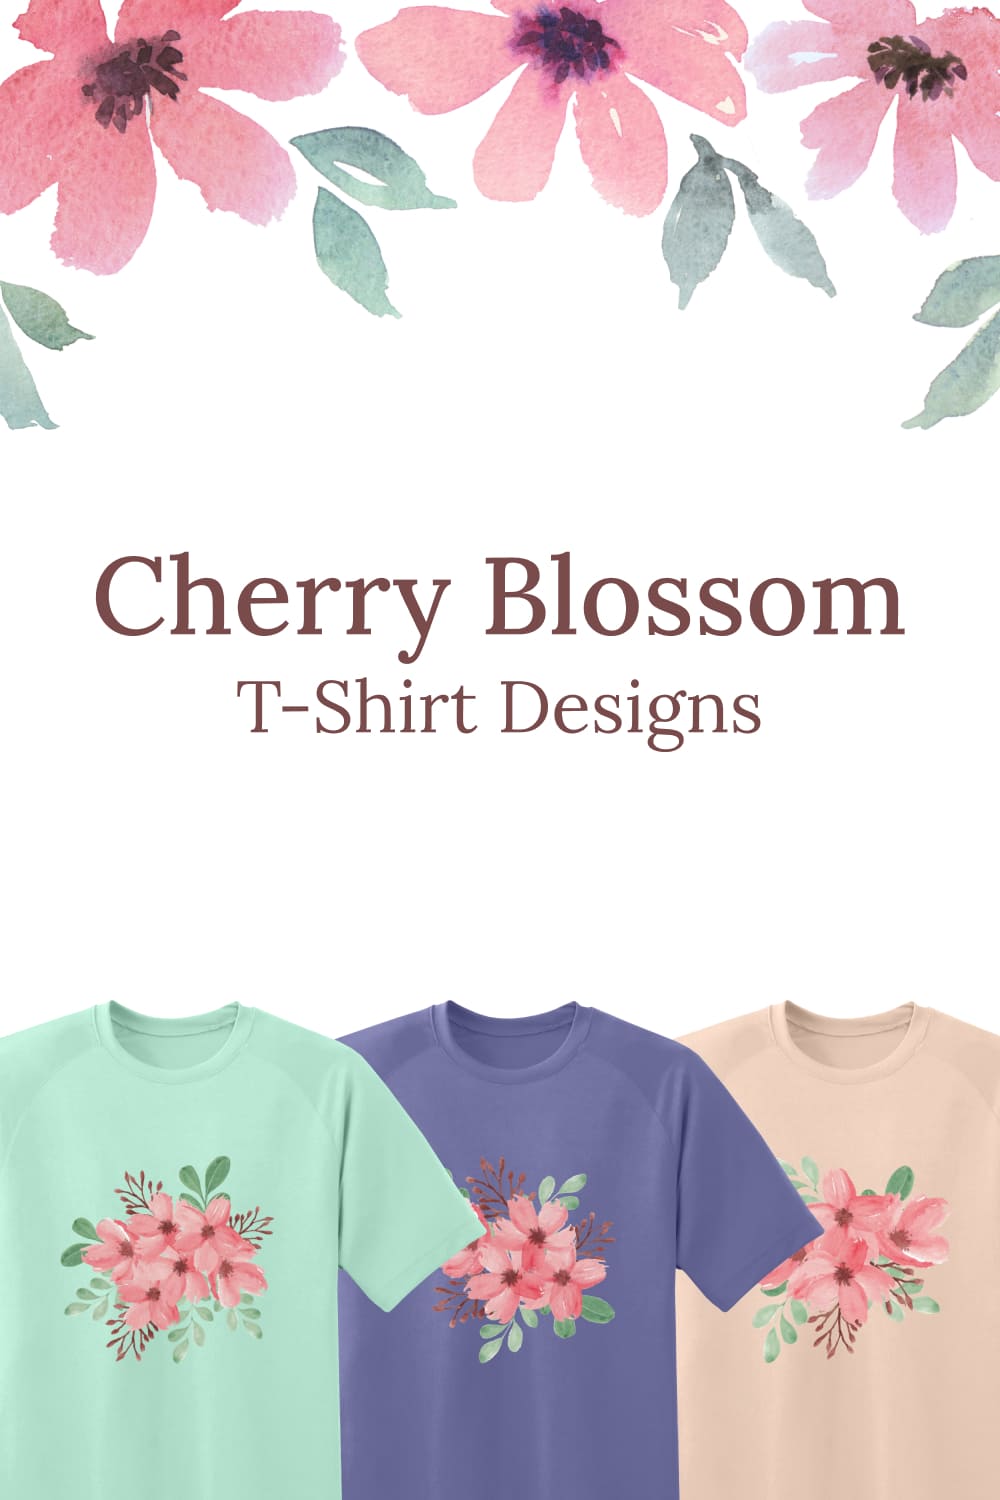 Scherry blossom t shirt designs images of pinterest.